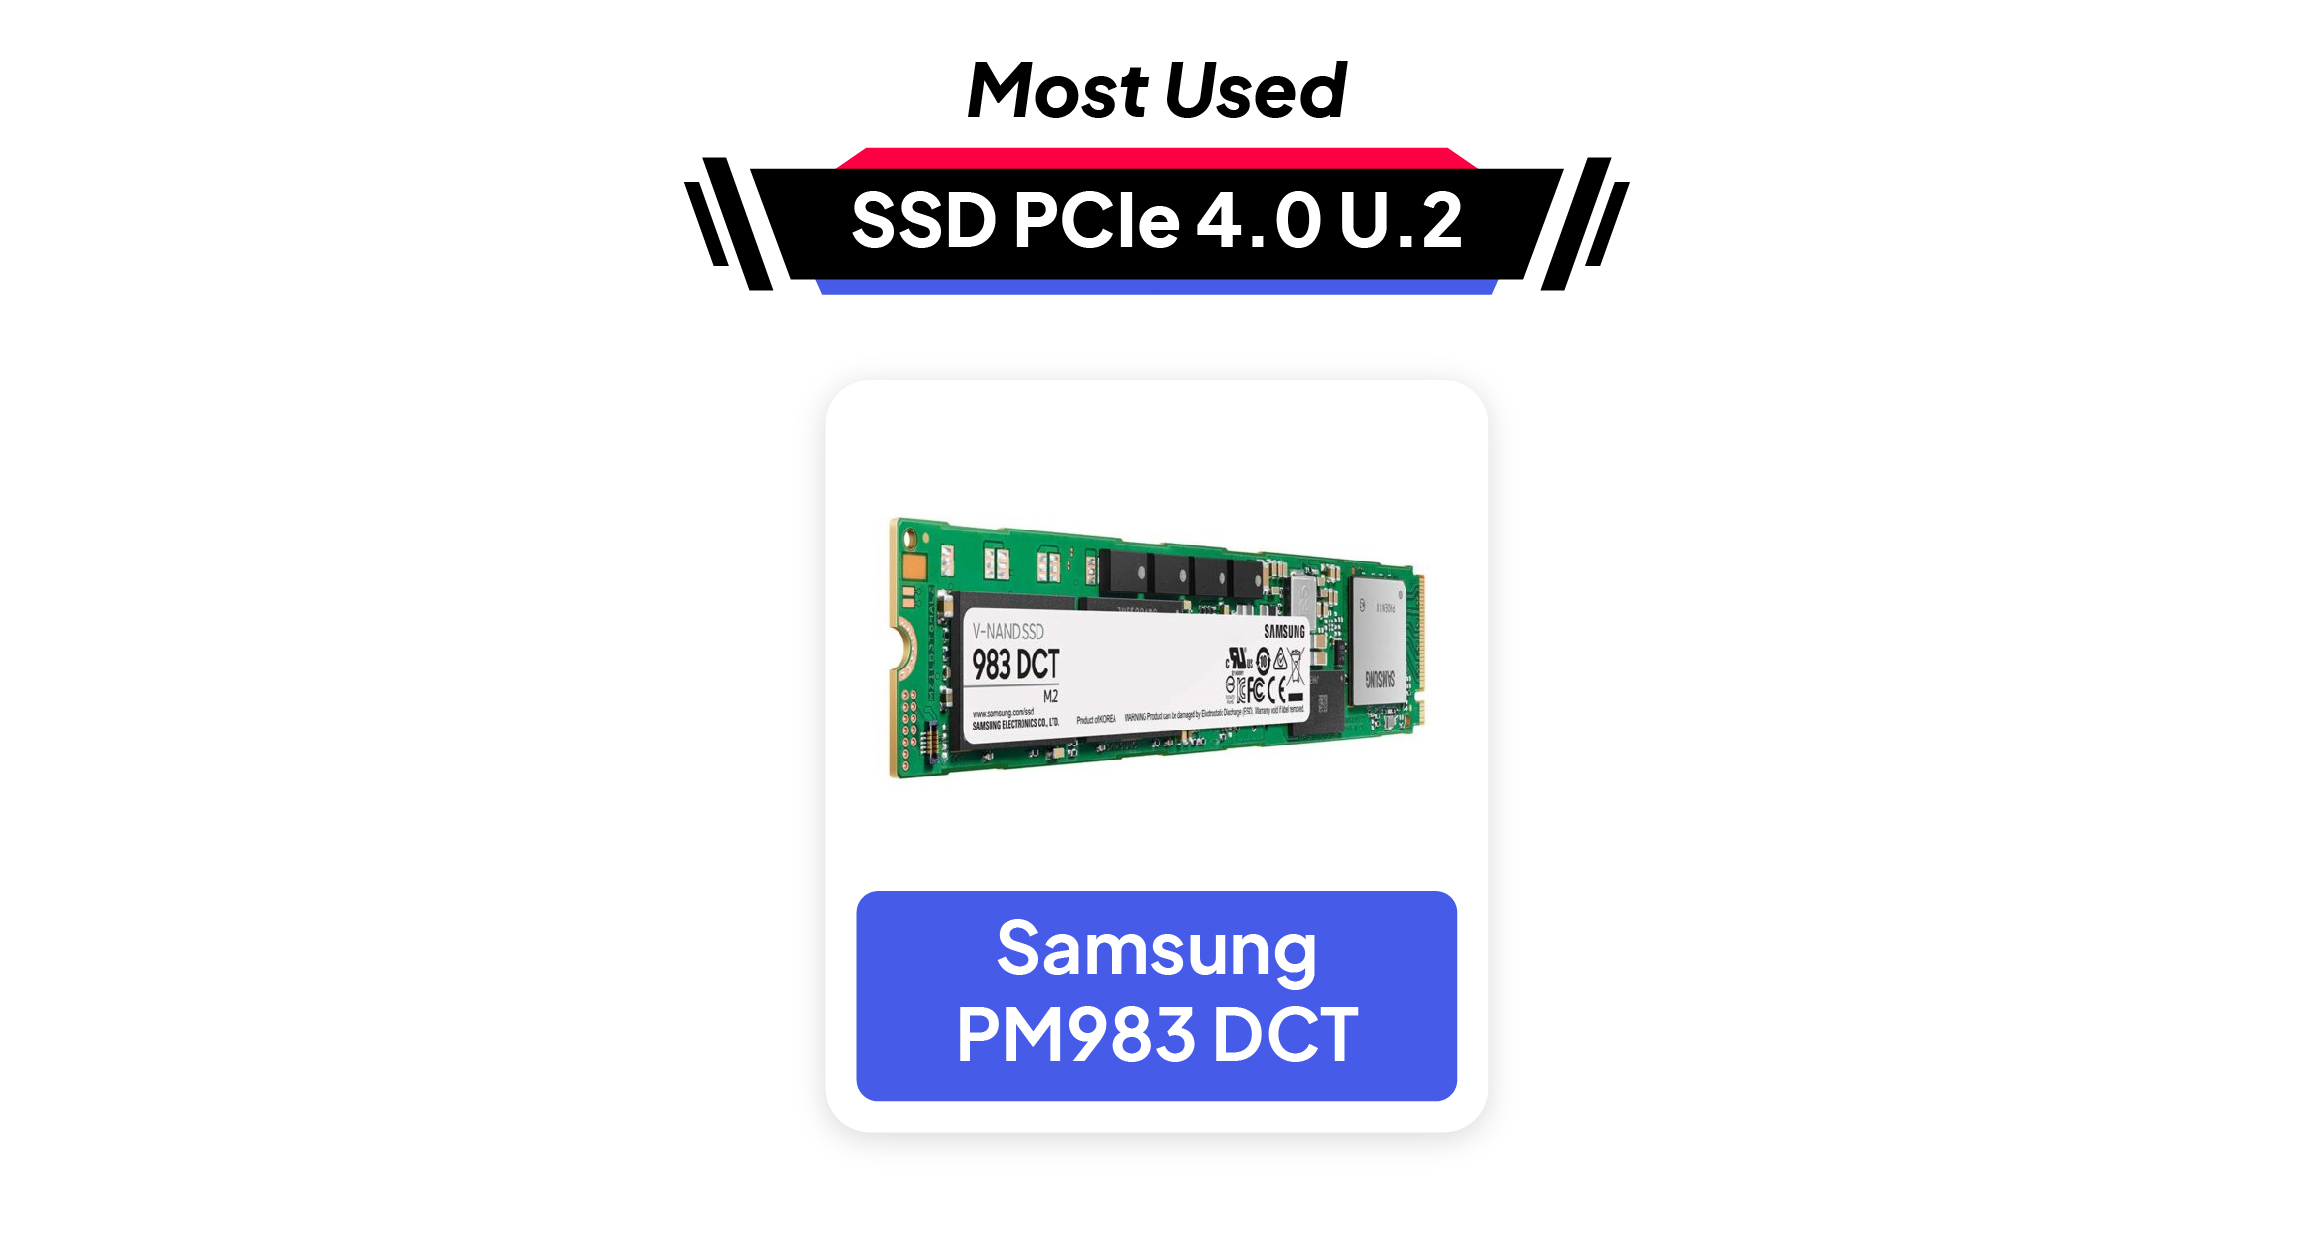 Toko Storage - Most Used SSD PCIe 4.0 U.2